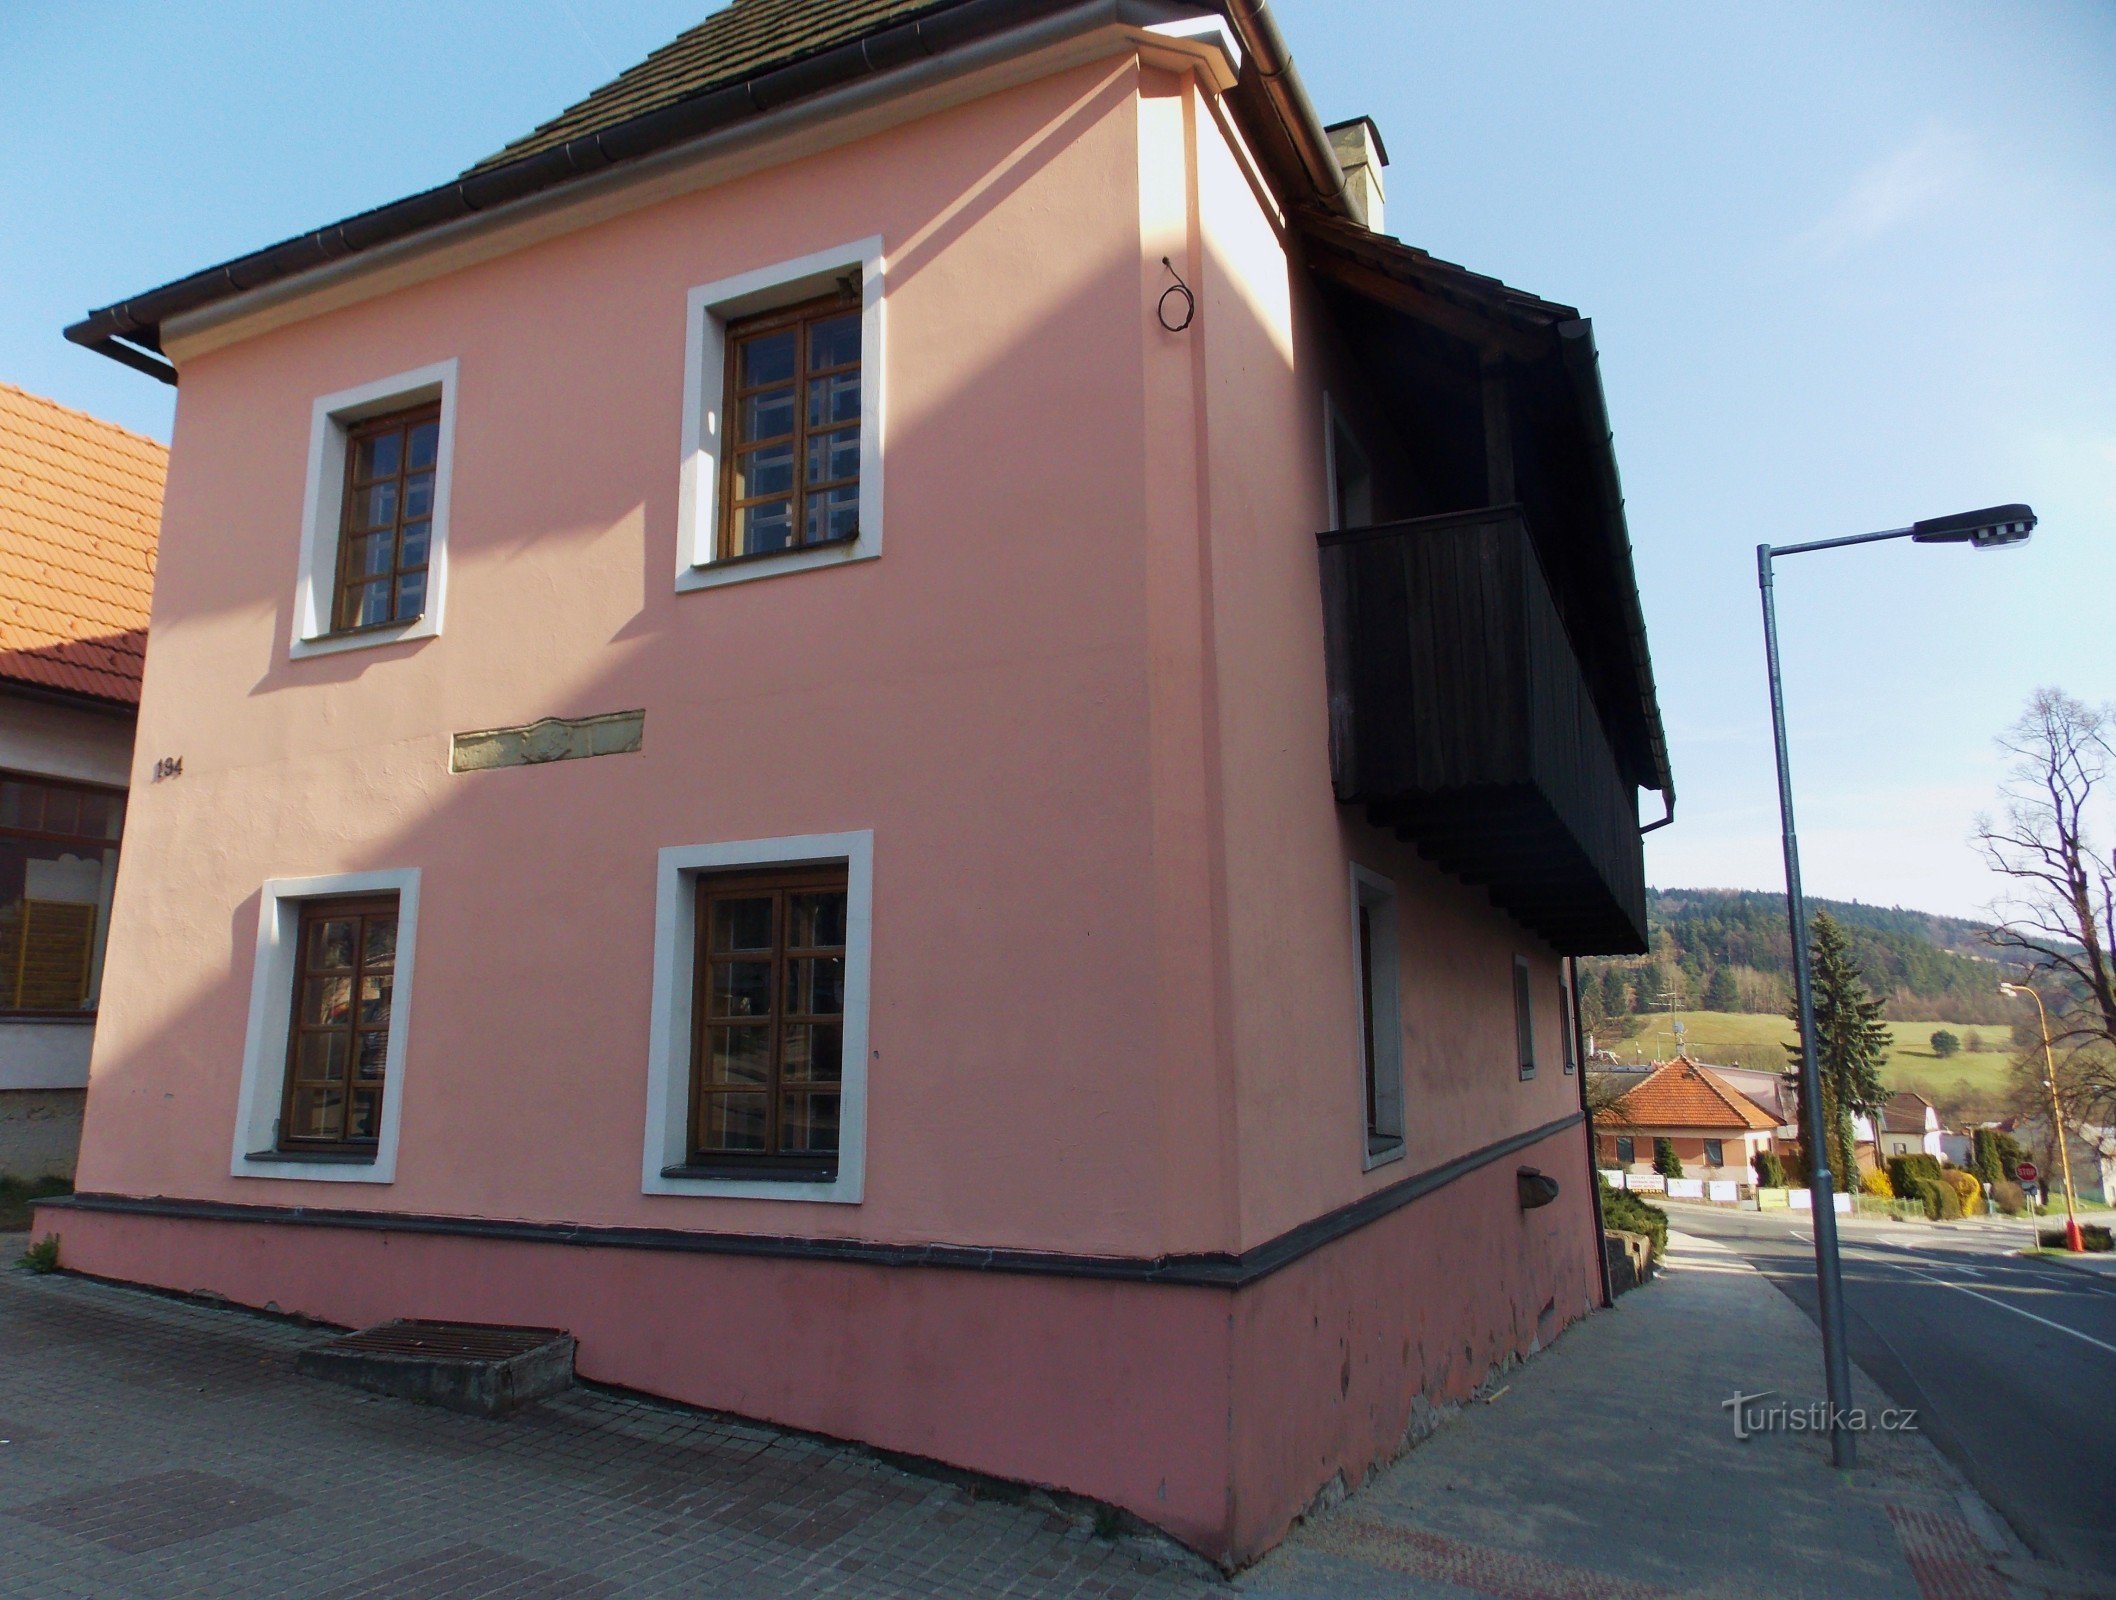 Красный дом, второй объект музея в Валашских Клобуках.